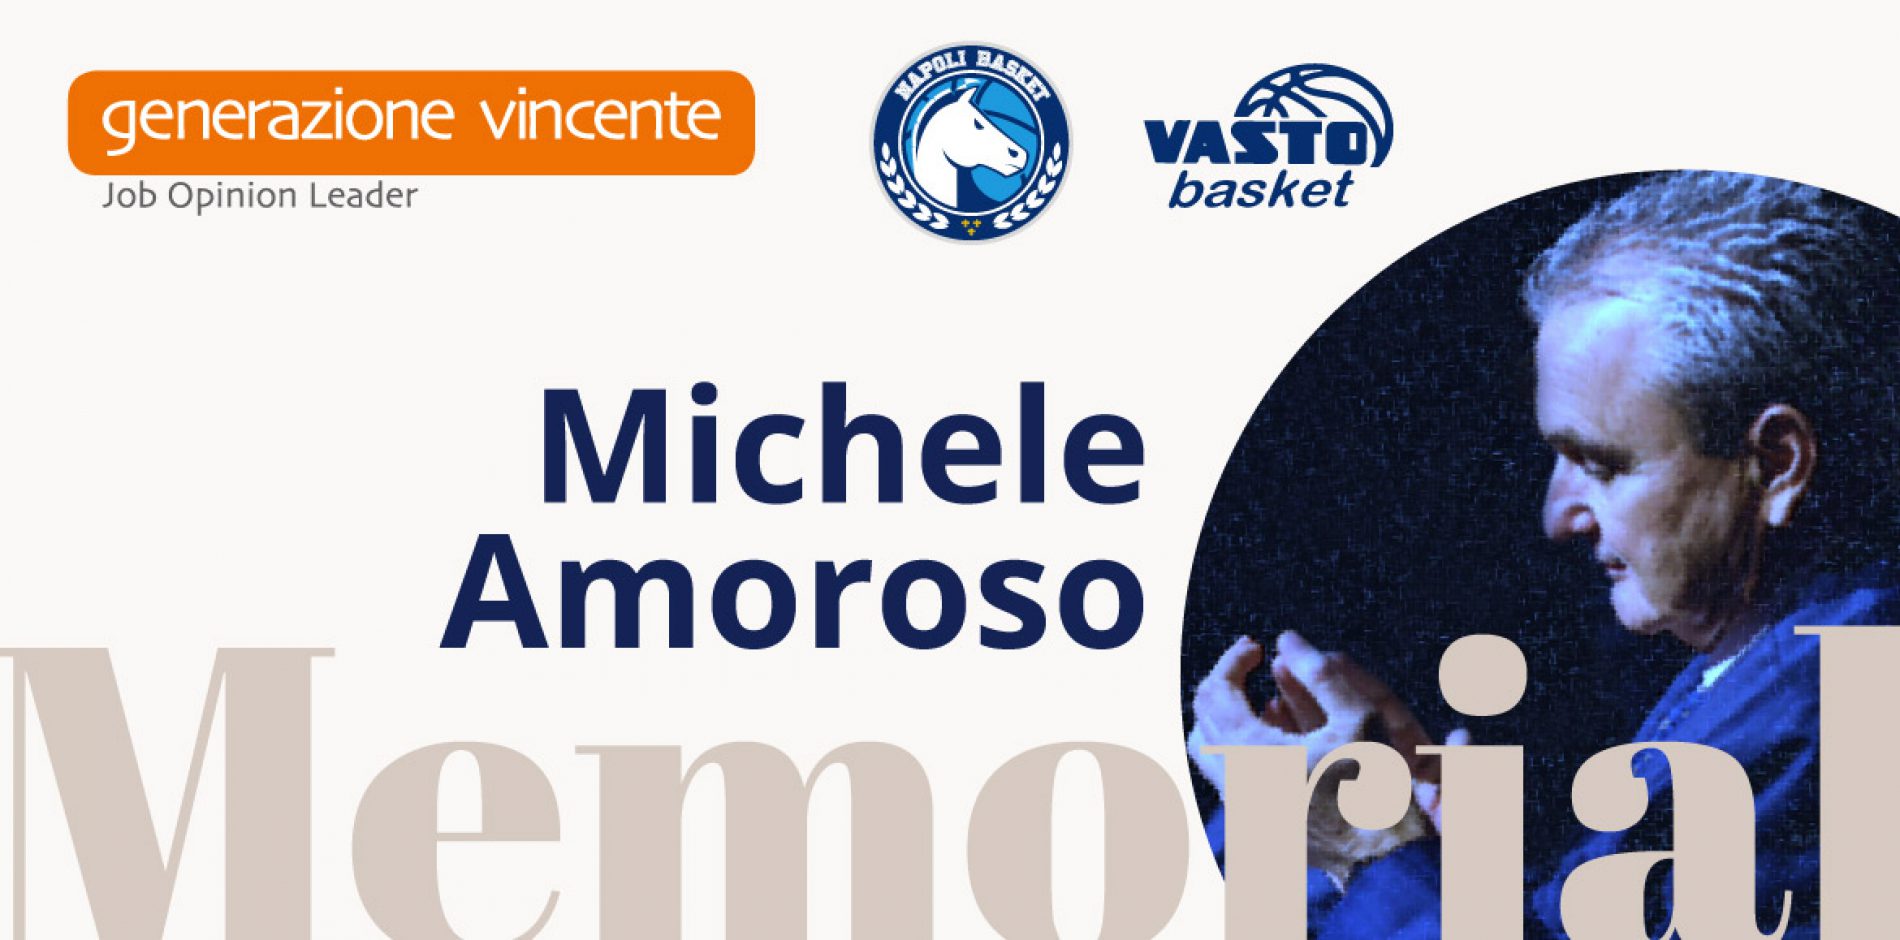 La famiglia del basket targato Gevi rende omaggio al Presidente Michele Amoroso